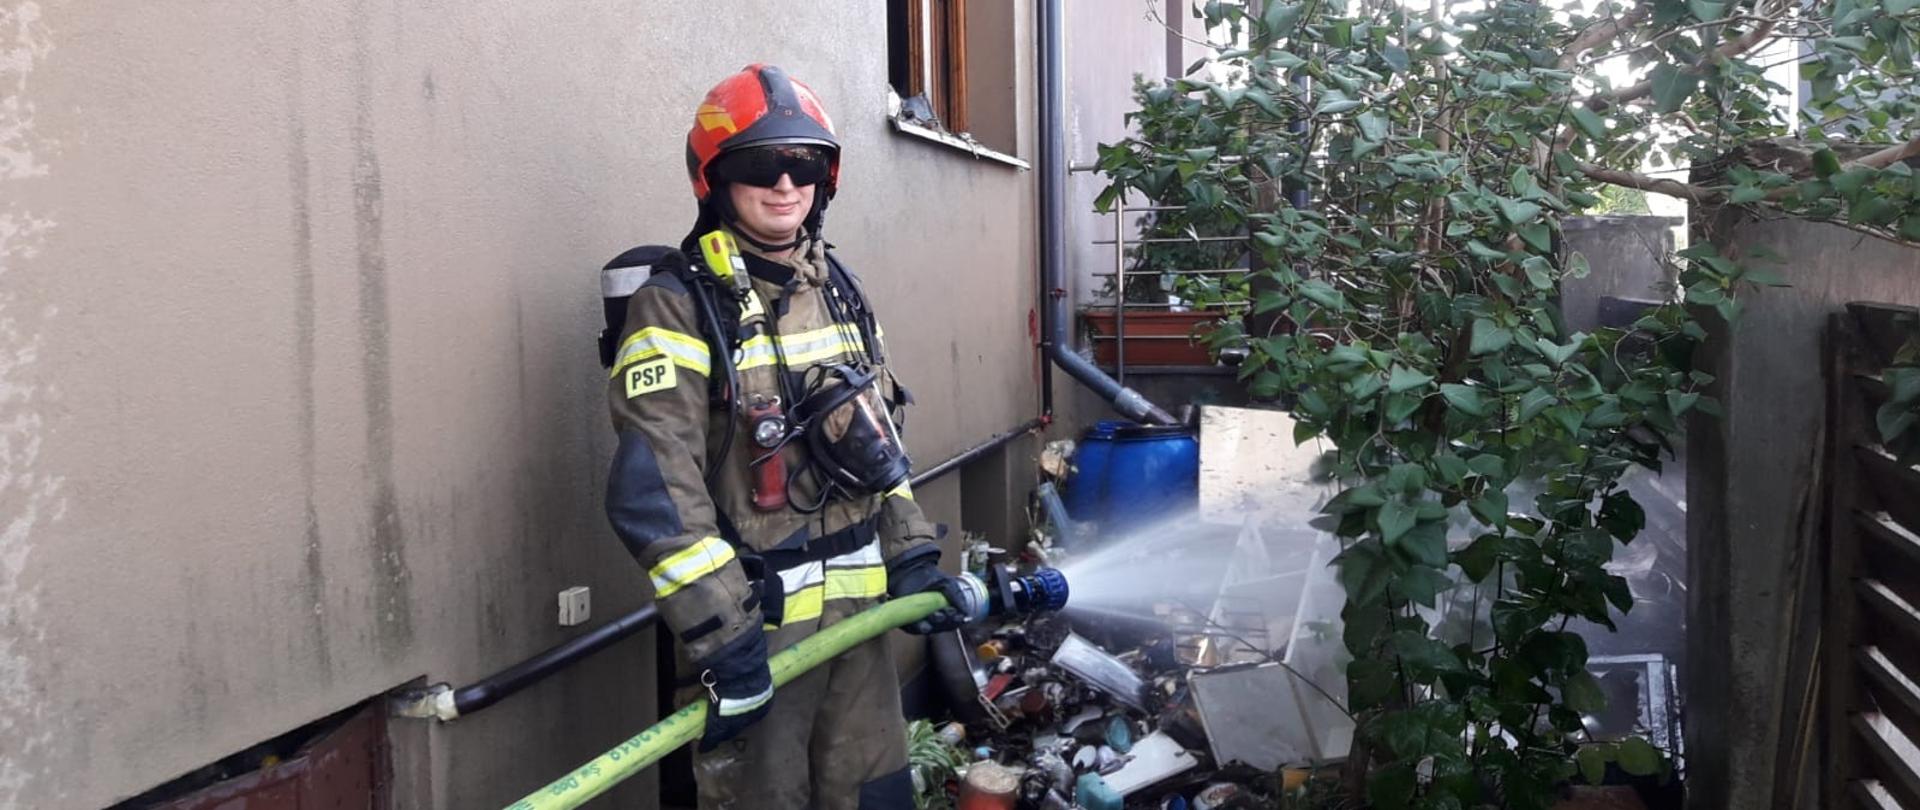 Strażak podaje prąd wody na spalone elementy przed budynkiem.